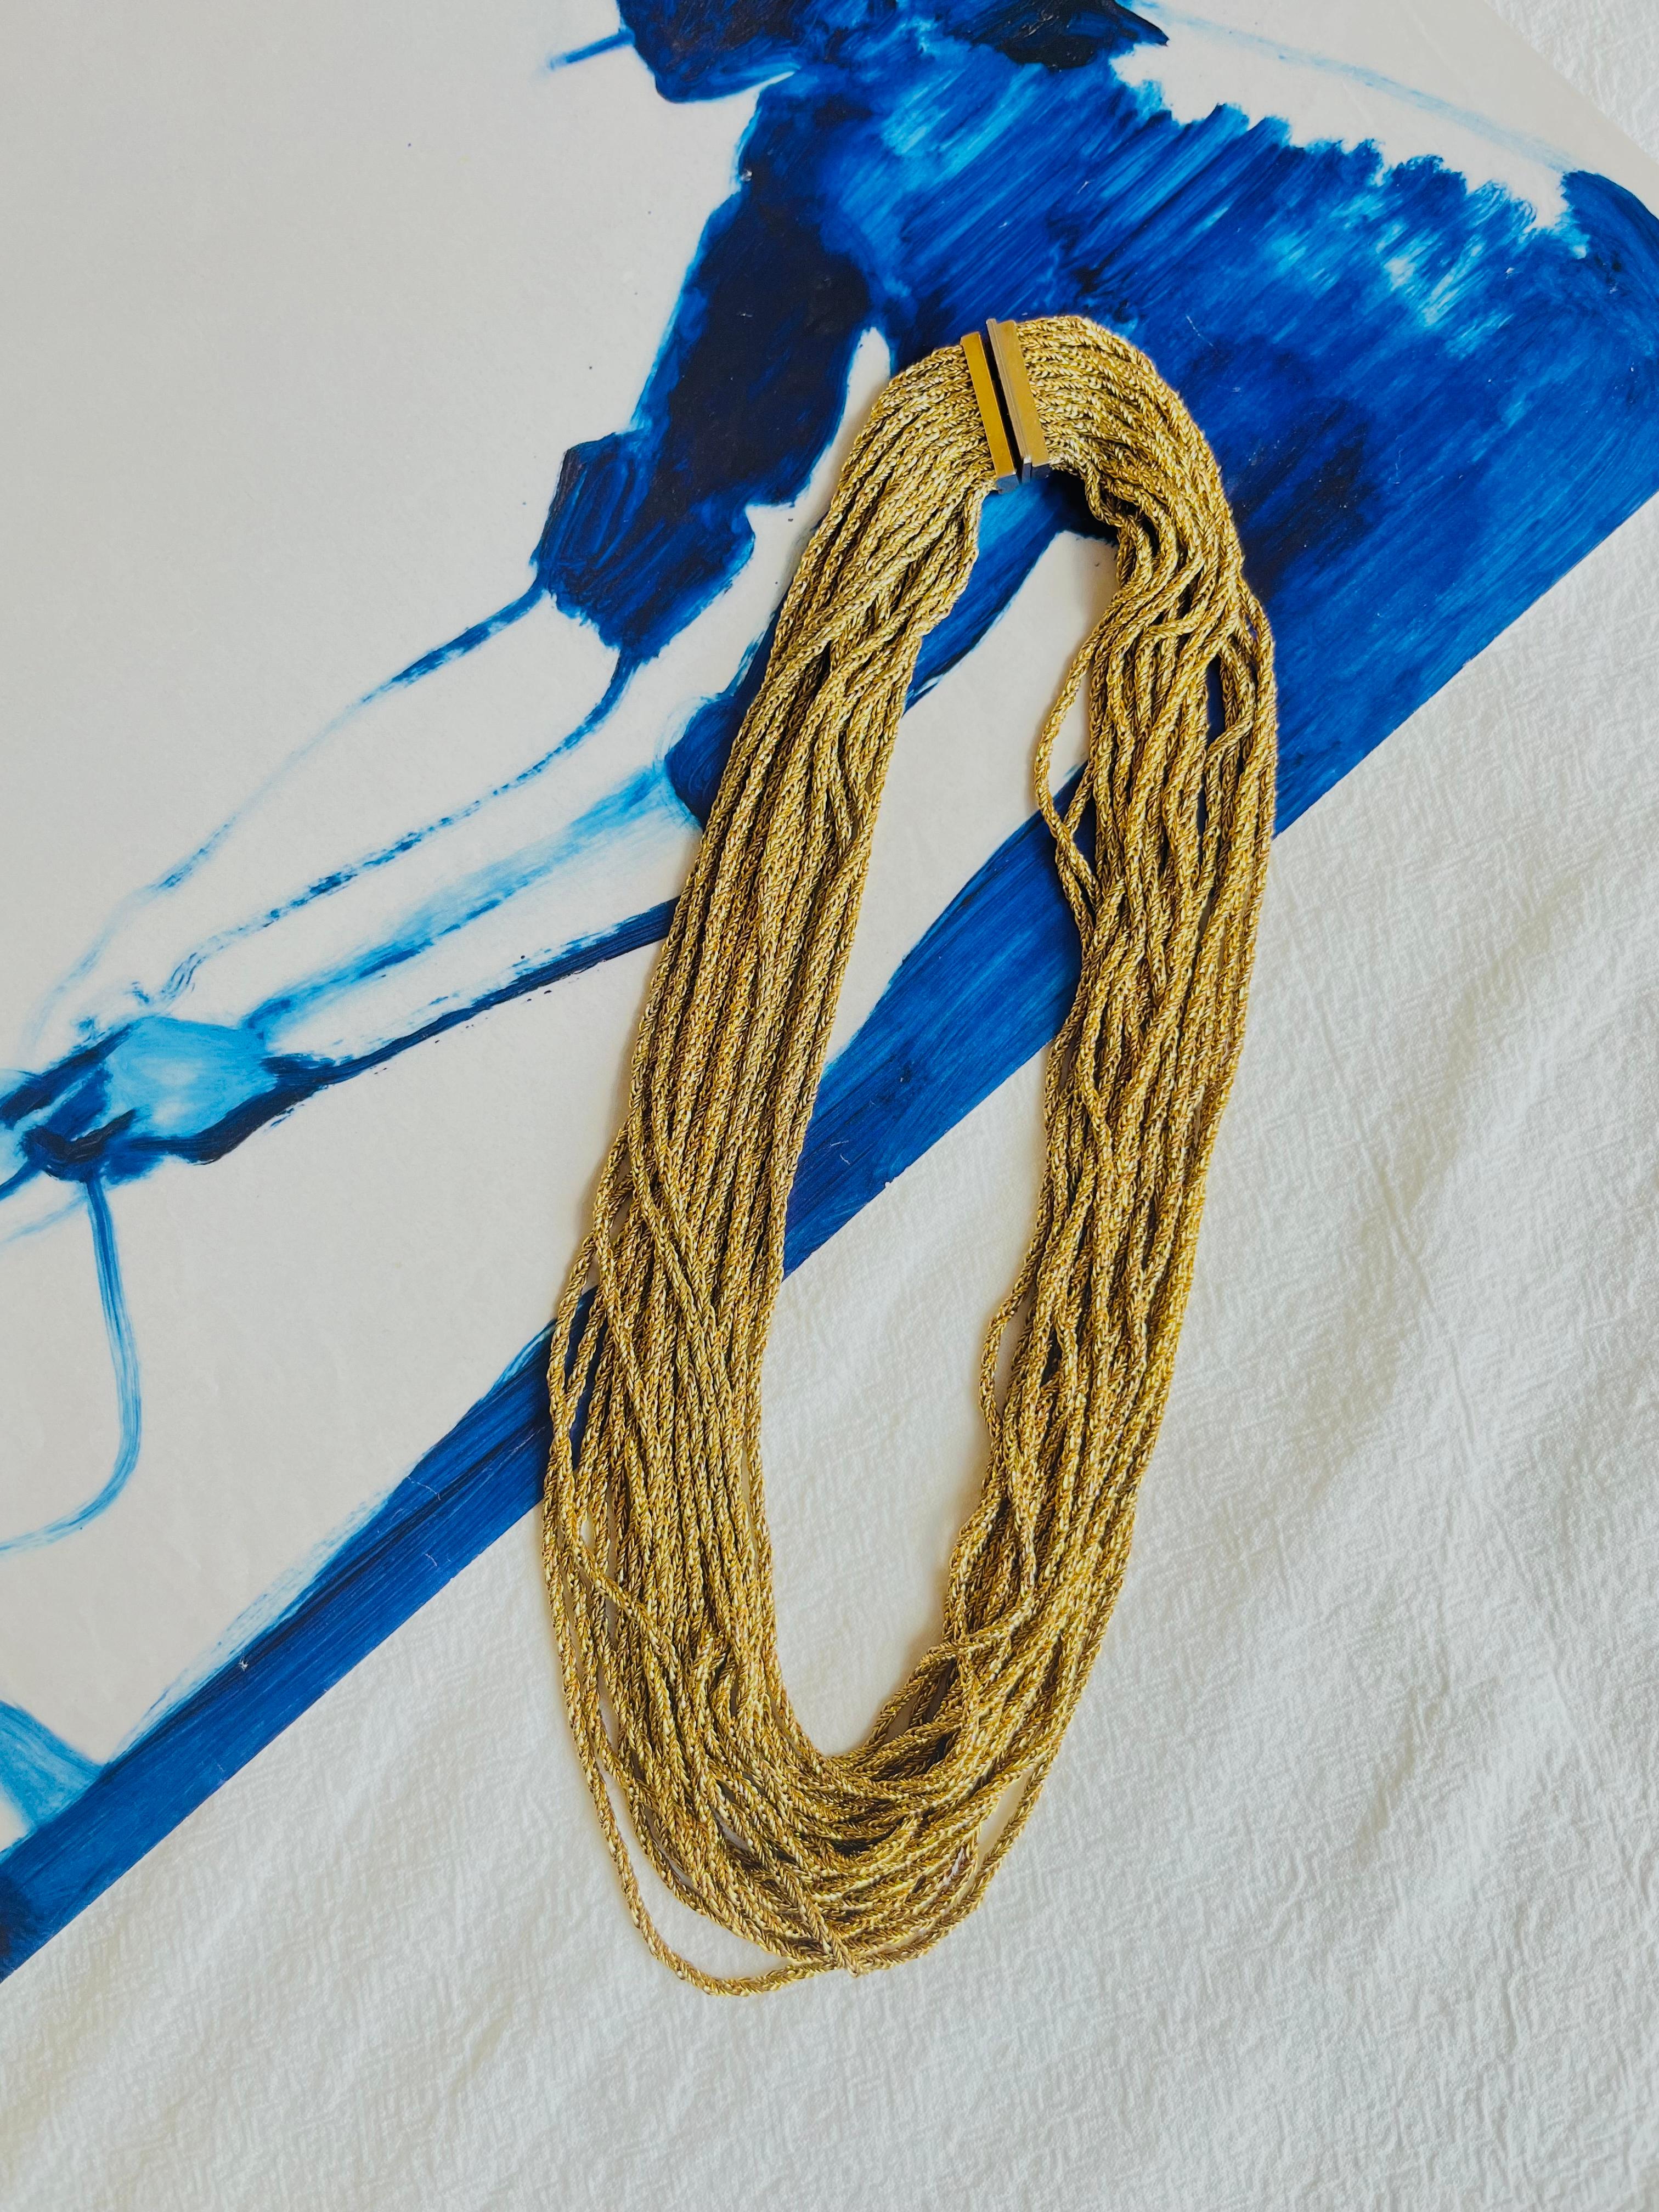 Christian Dior GROSSE 1968 Zwanzig 20 Stränge Schichten Kette klobig Halskette Gold-Ton

Sehr guter Zustand. Einige leichte Kratzer oder Farbverluste, kaum wahrnehmbar. 100% echt.

Eine sehr schöne Halskette von GROSSE, signiert auf der Rückseite.